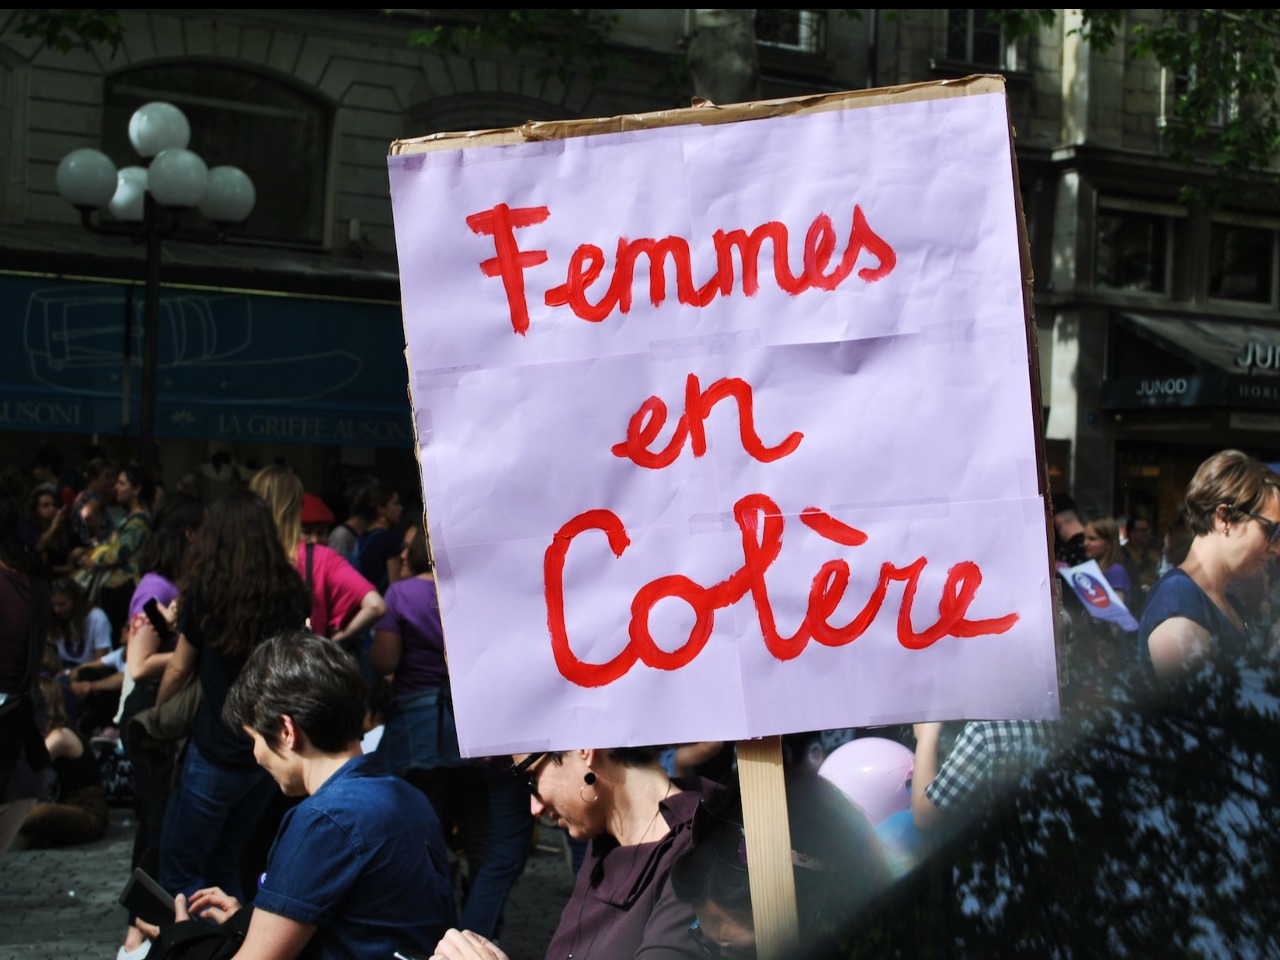 Manifestation de femmes dans une rue. Au premier plan est brandie une pancarte sur lequel est inscrit Femmes en colère